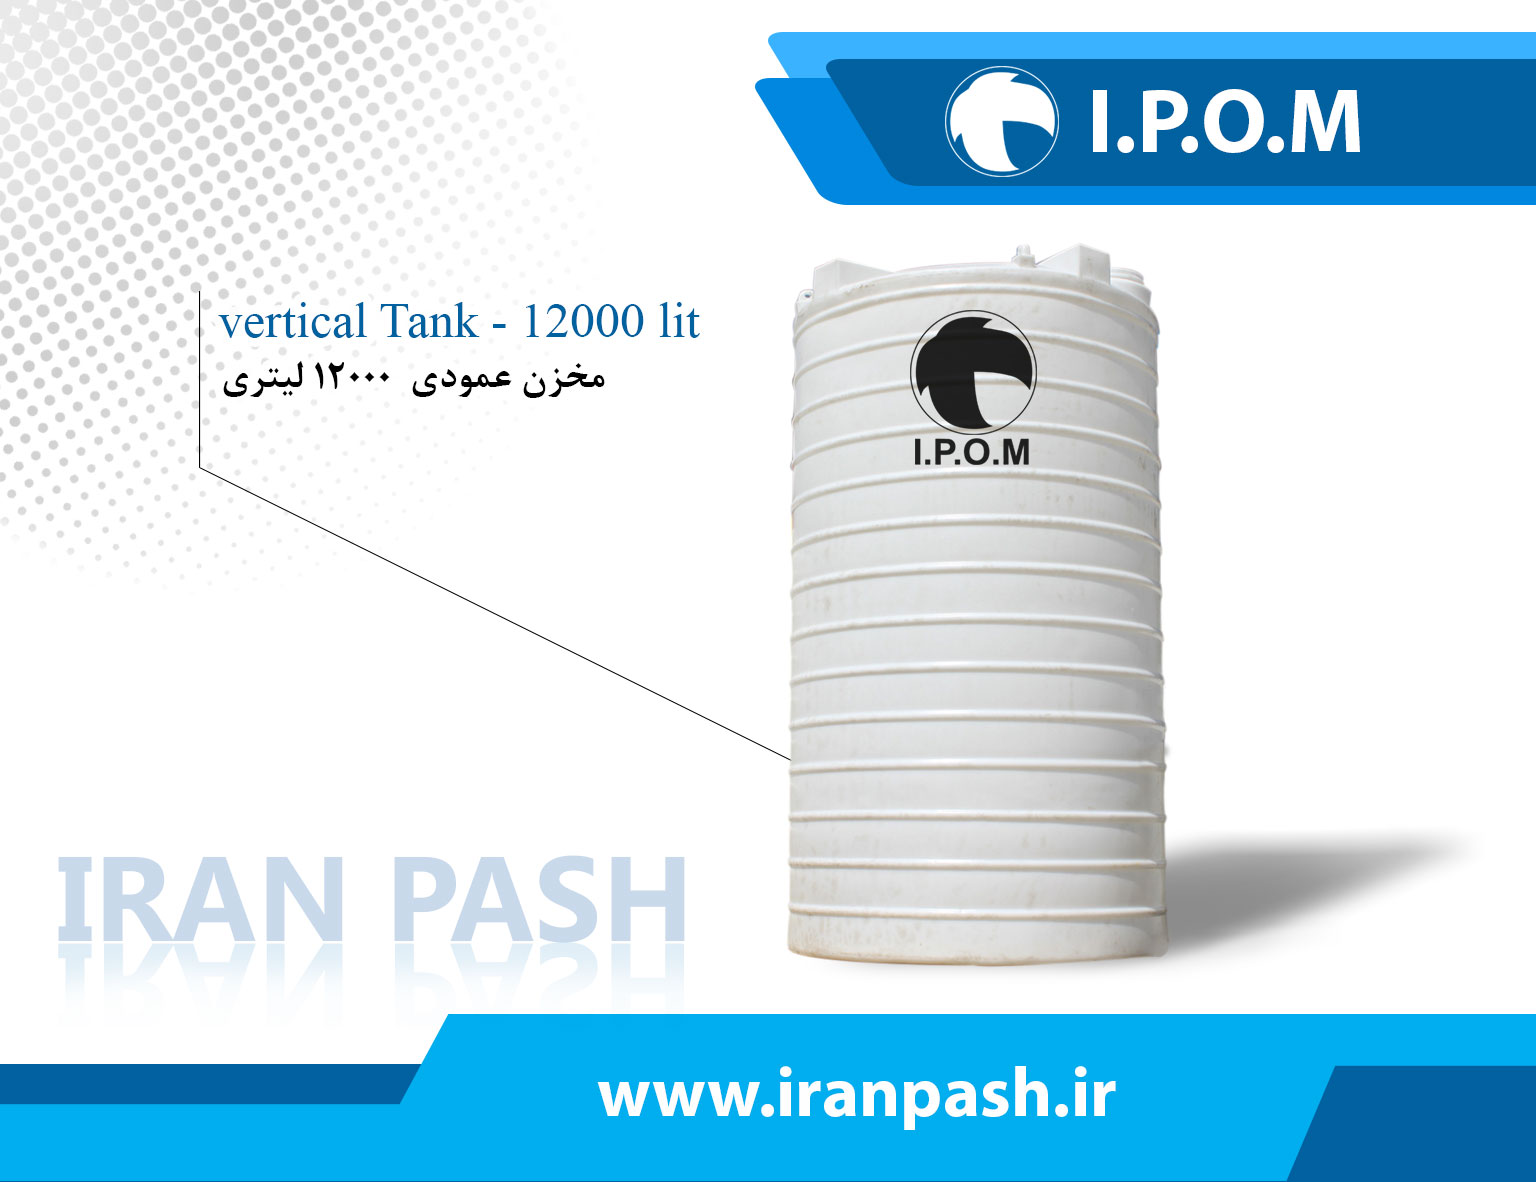 12000 liter vertical tank